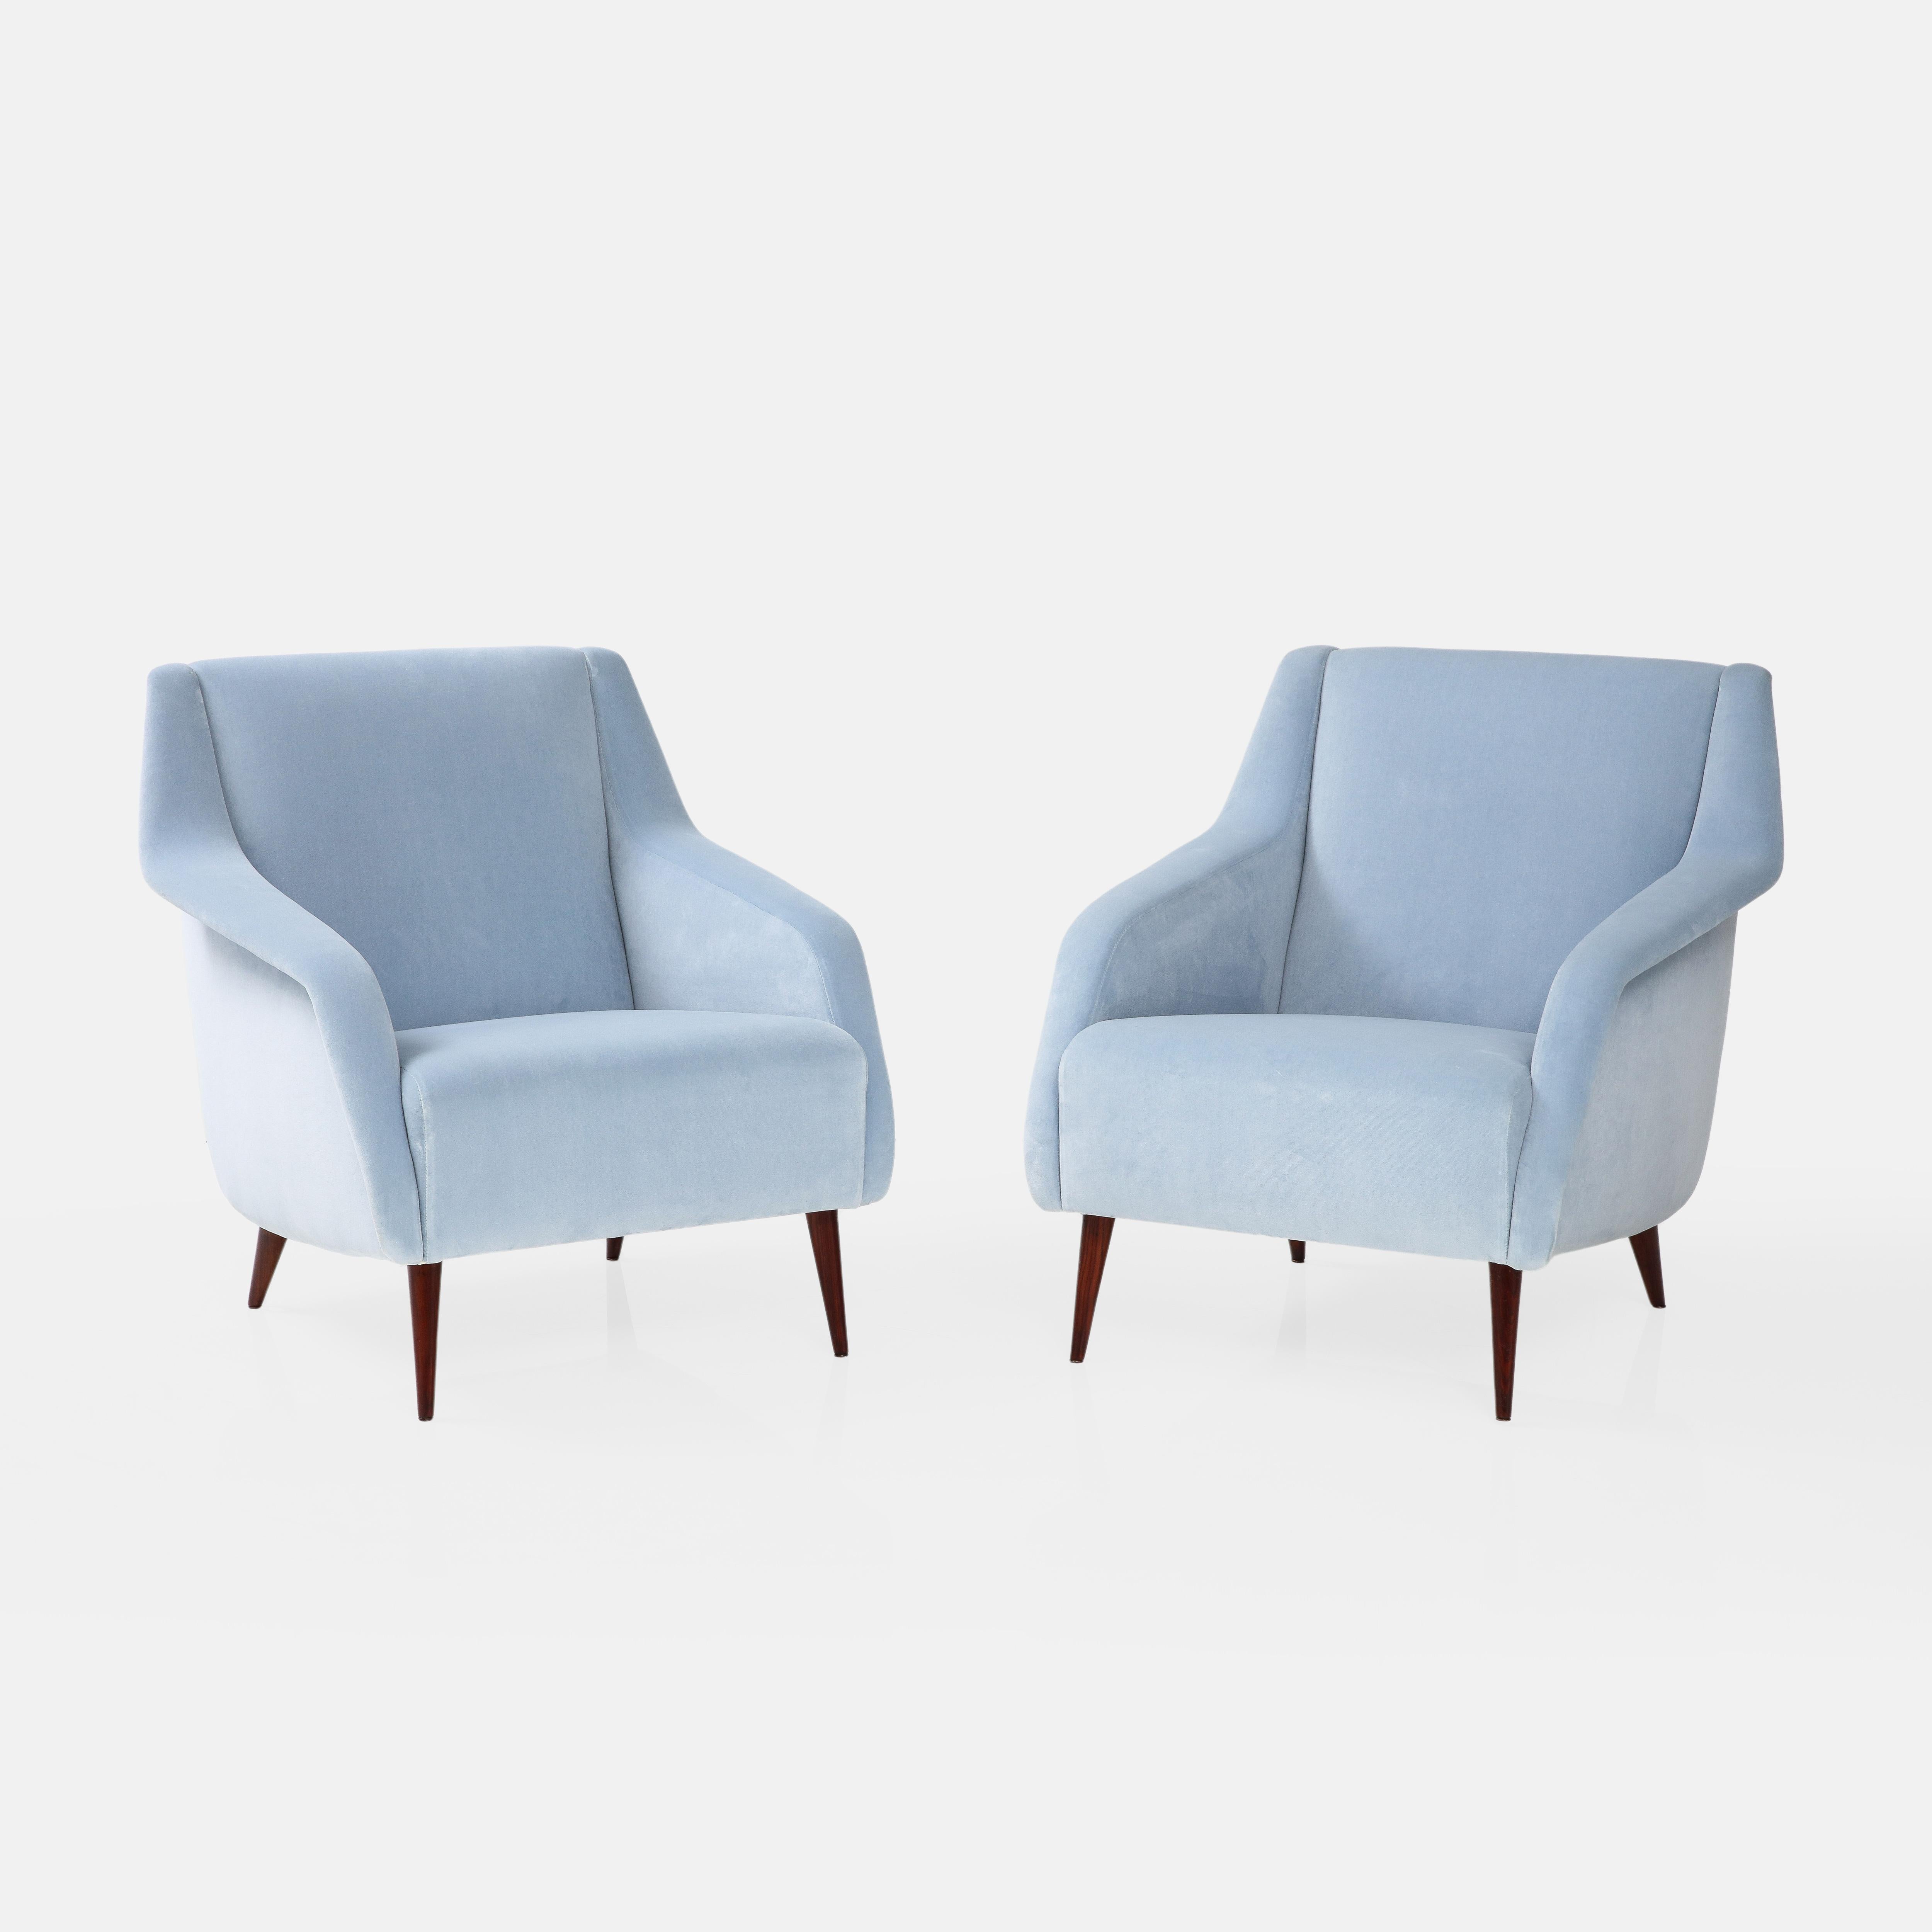 Carlo De Carli pour Cassina paire de chaises ou fauteuils de salon sculpturaux en tapisserie de velours bleu clair avec pieds en bois teinté. Ces fauteuils sont un modèle emblématique de la première édition de Carlo De Carli, avec des lignes